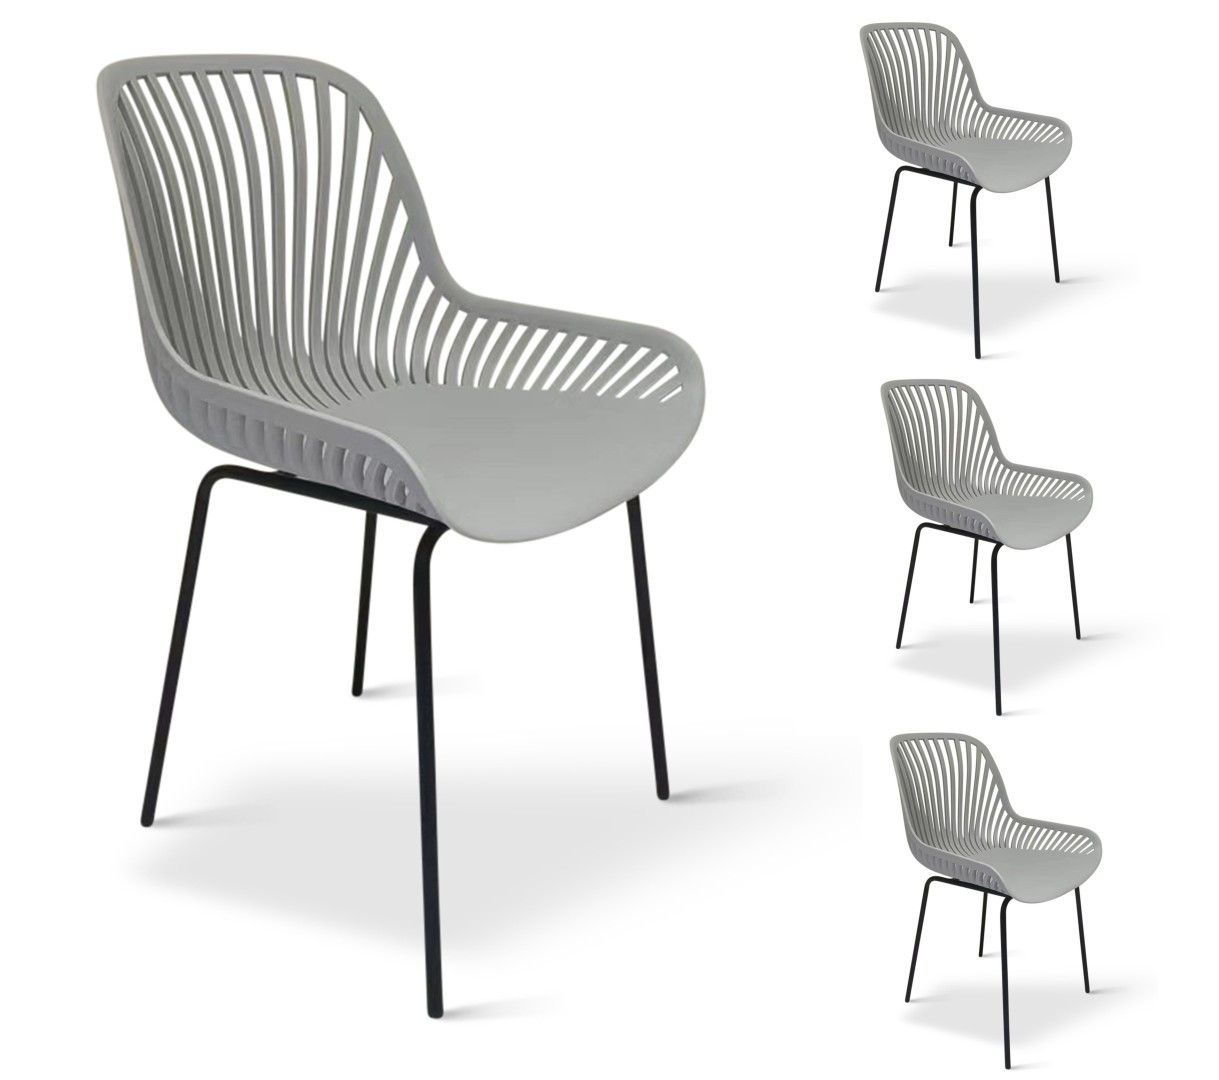 Texim GABI - sada designových židlí - šedá